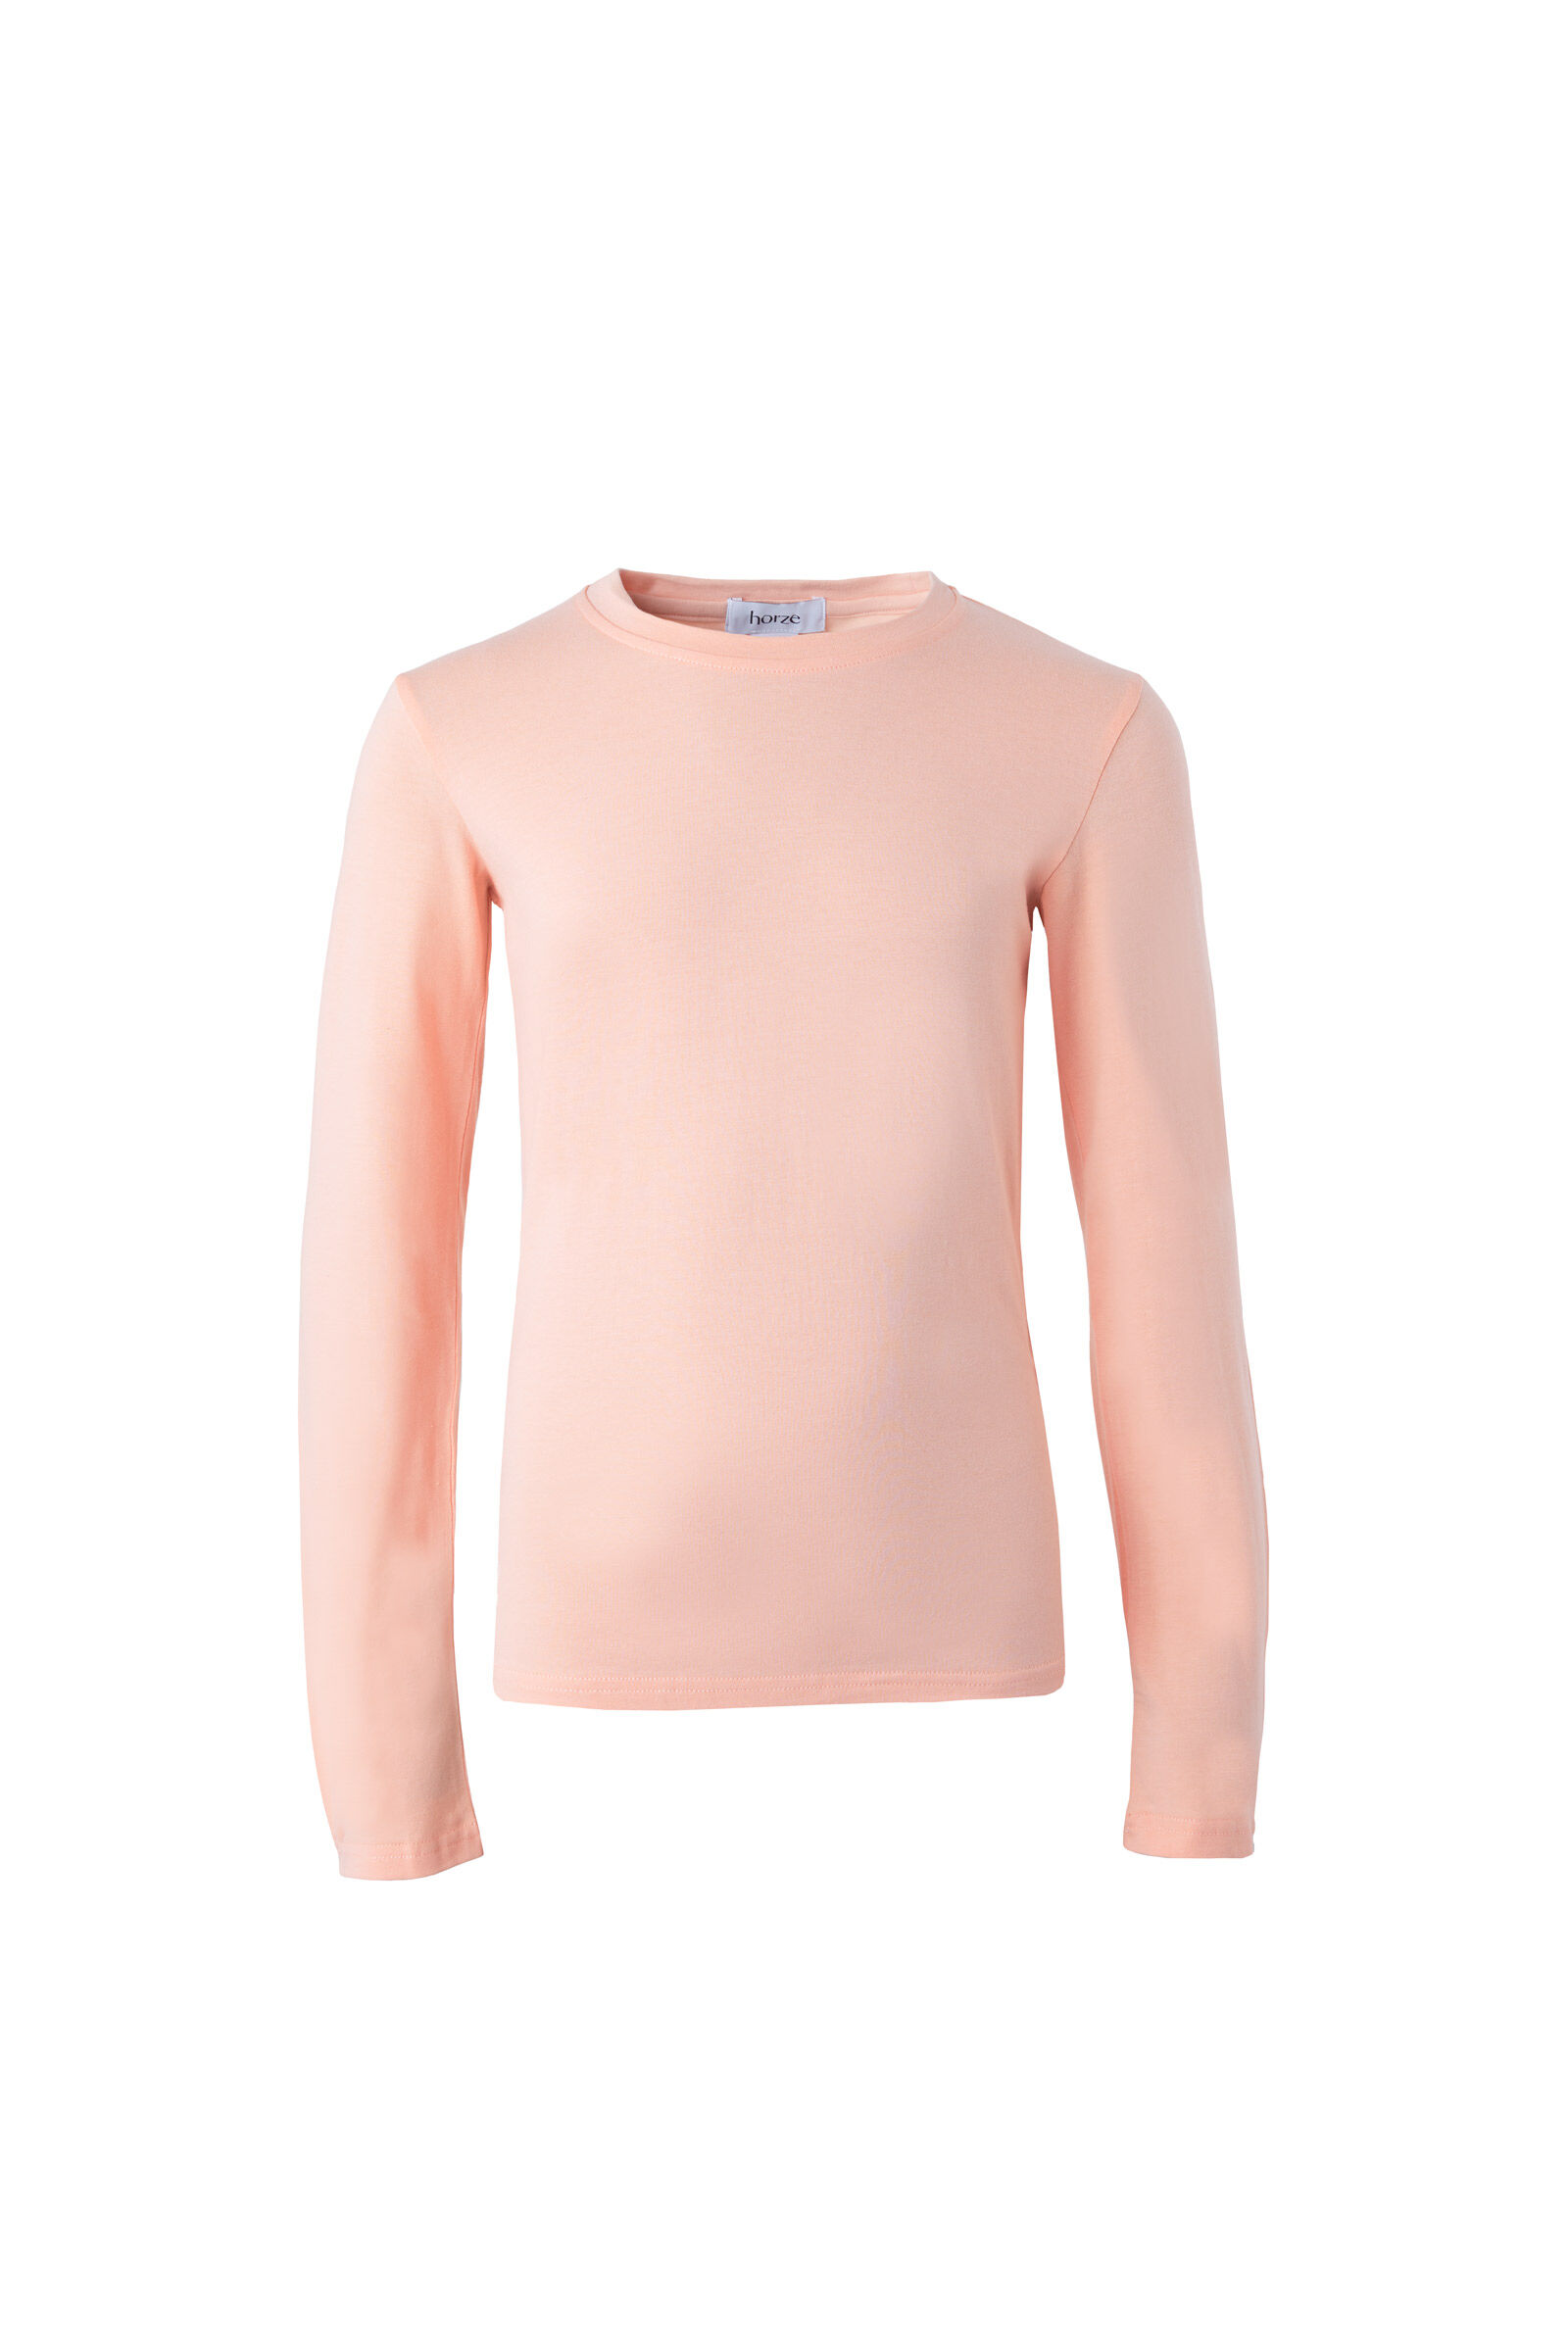 Horze Monster långärmad tröja för barn  Calypso Coral (pink) 146/152 unisex